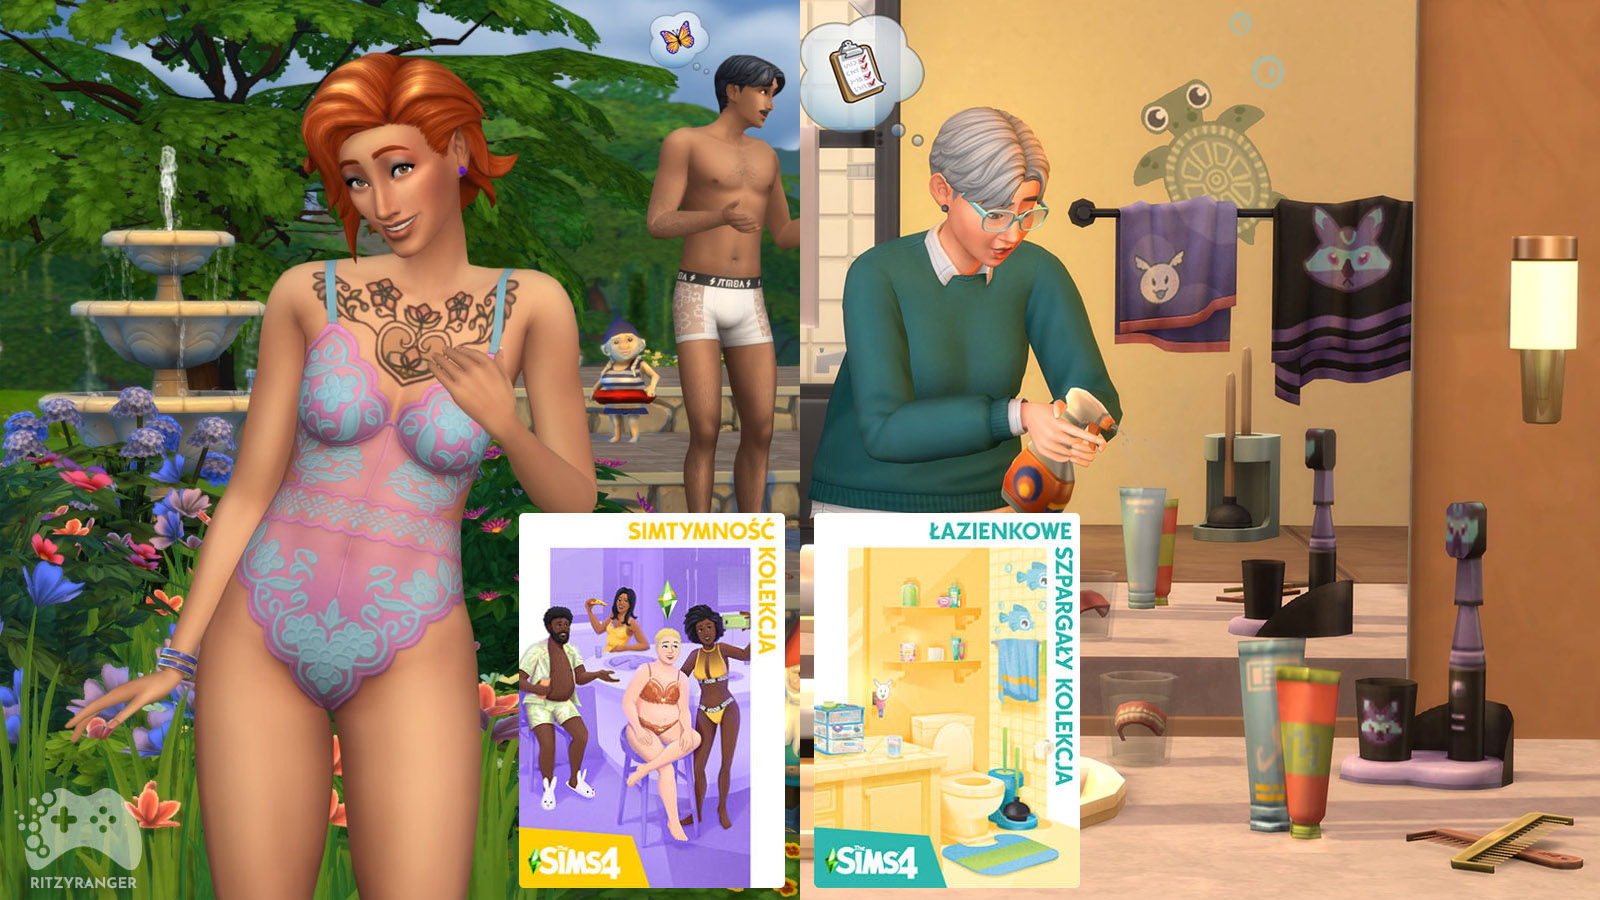 Oficjalna zapowiedź The Sims 4 Simtymność i Łazienkowe szpargały